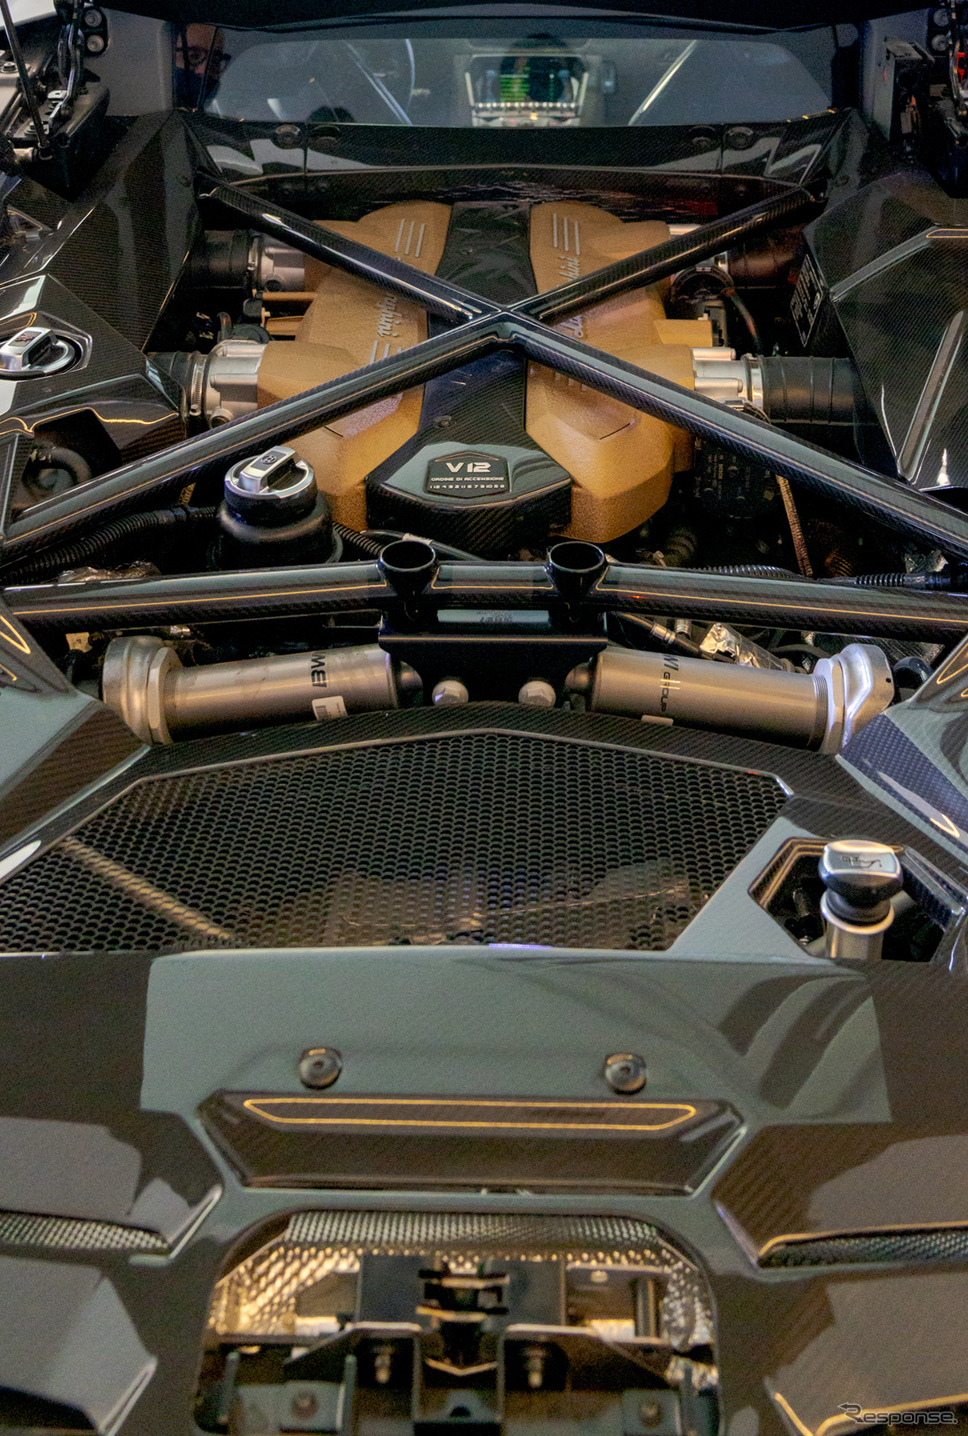 手前にはシルバーのプッシュロッド式磁気レオロジー・アクティブ・リアサスペンションが見える。奥にはV12自然吸気エンジンが鎮座する。《写真撮影 関口敬文》